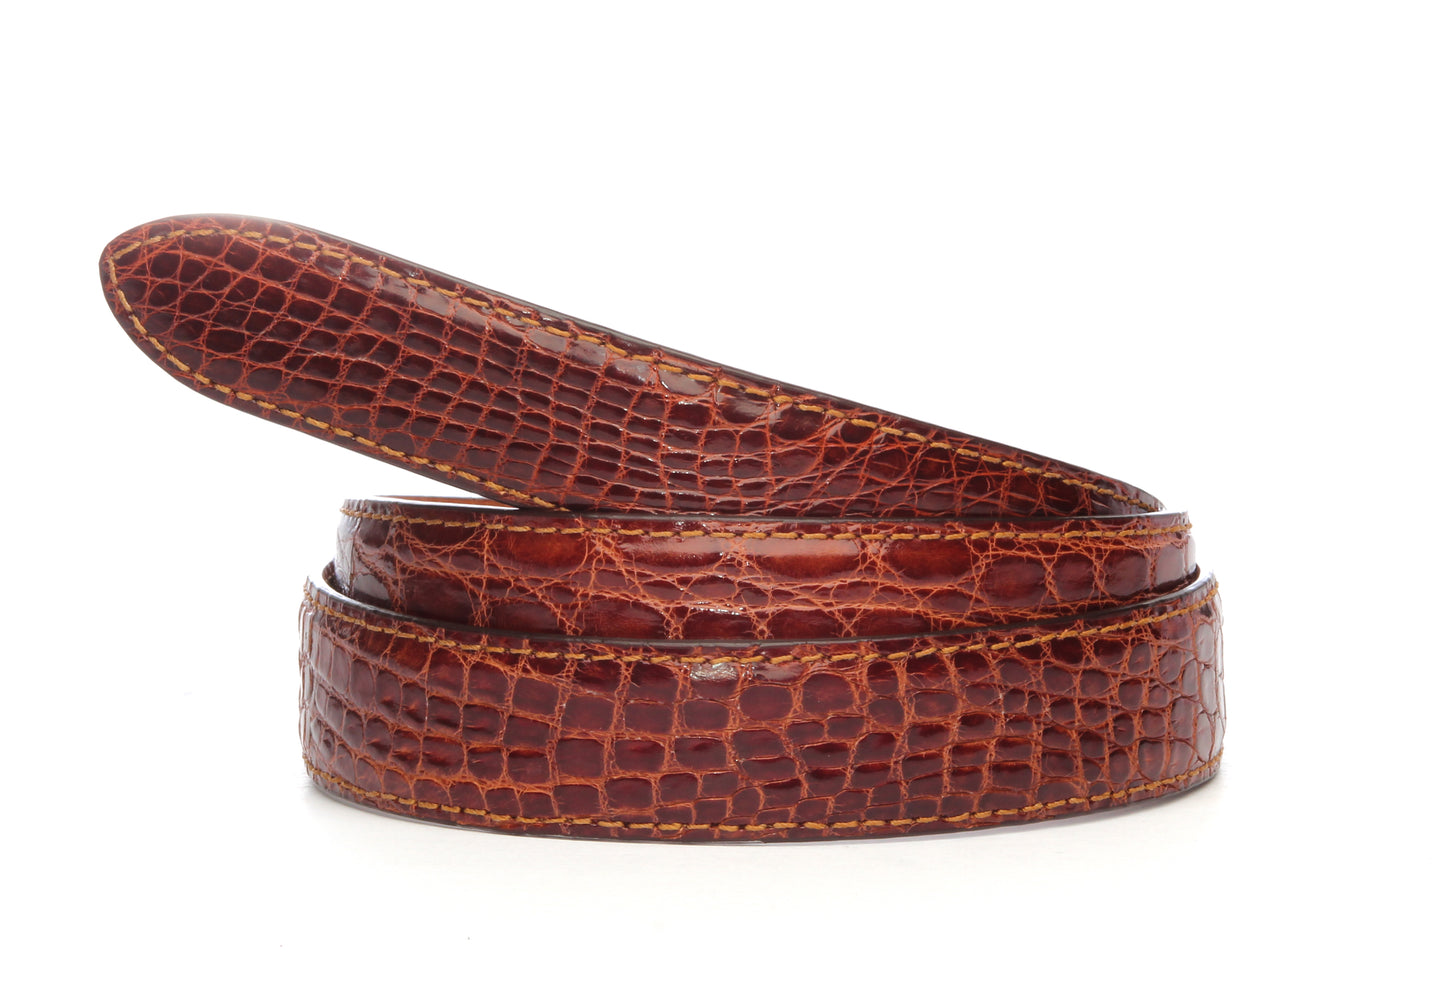 Men's crocodile belt strap in cognac with a 1.25-inch width, formal look, full roll